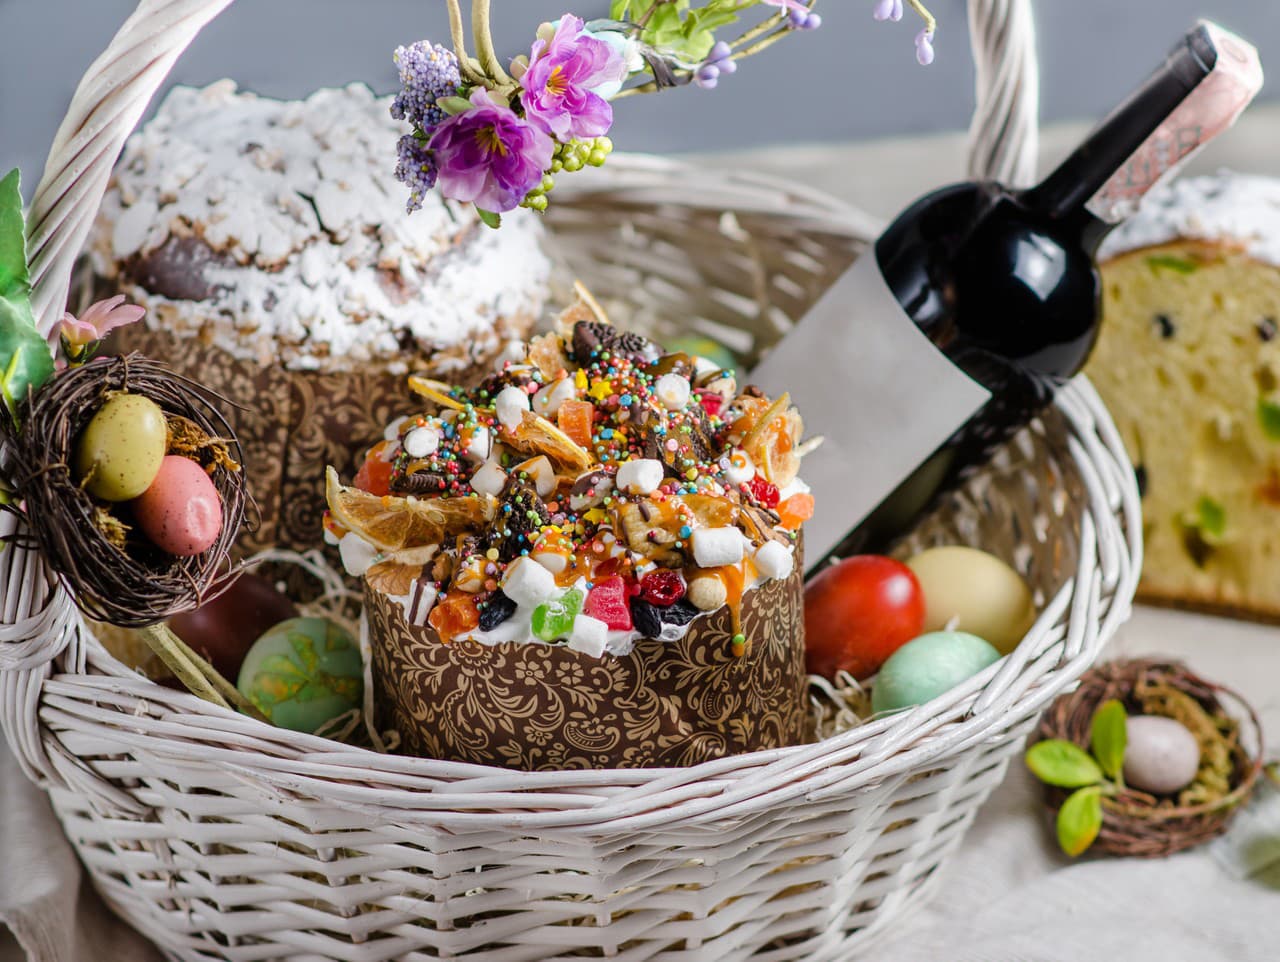 Veľkonočný košík s veľkonočným koláčom, vínom a kraslicami.